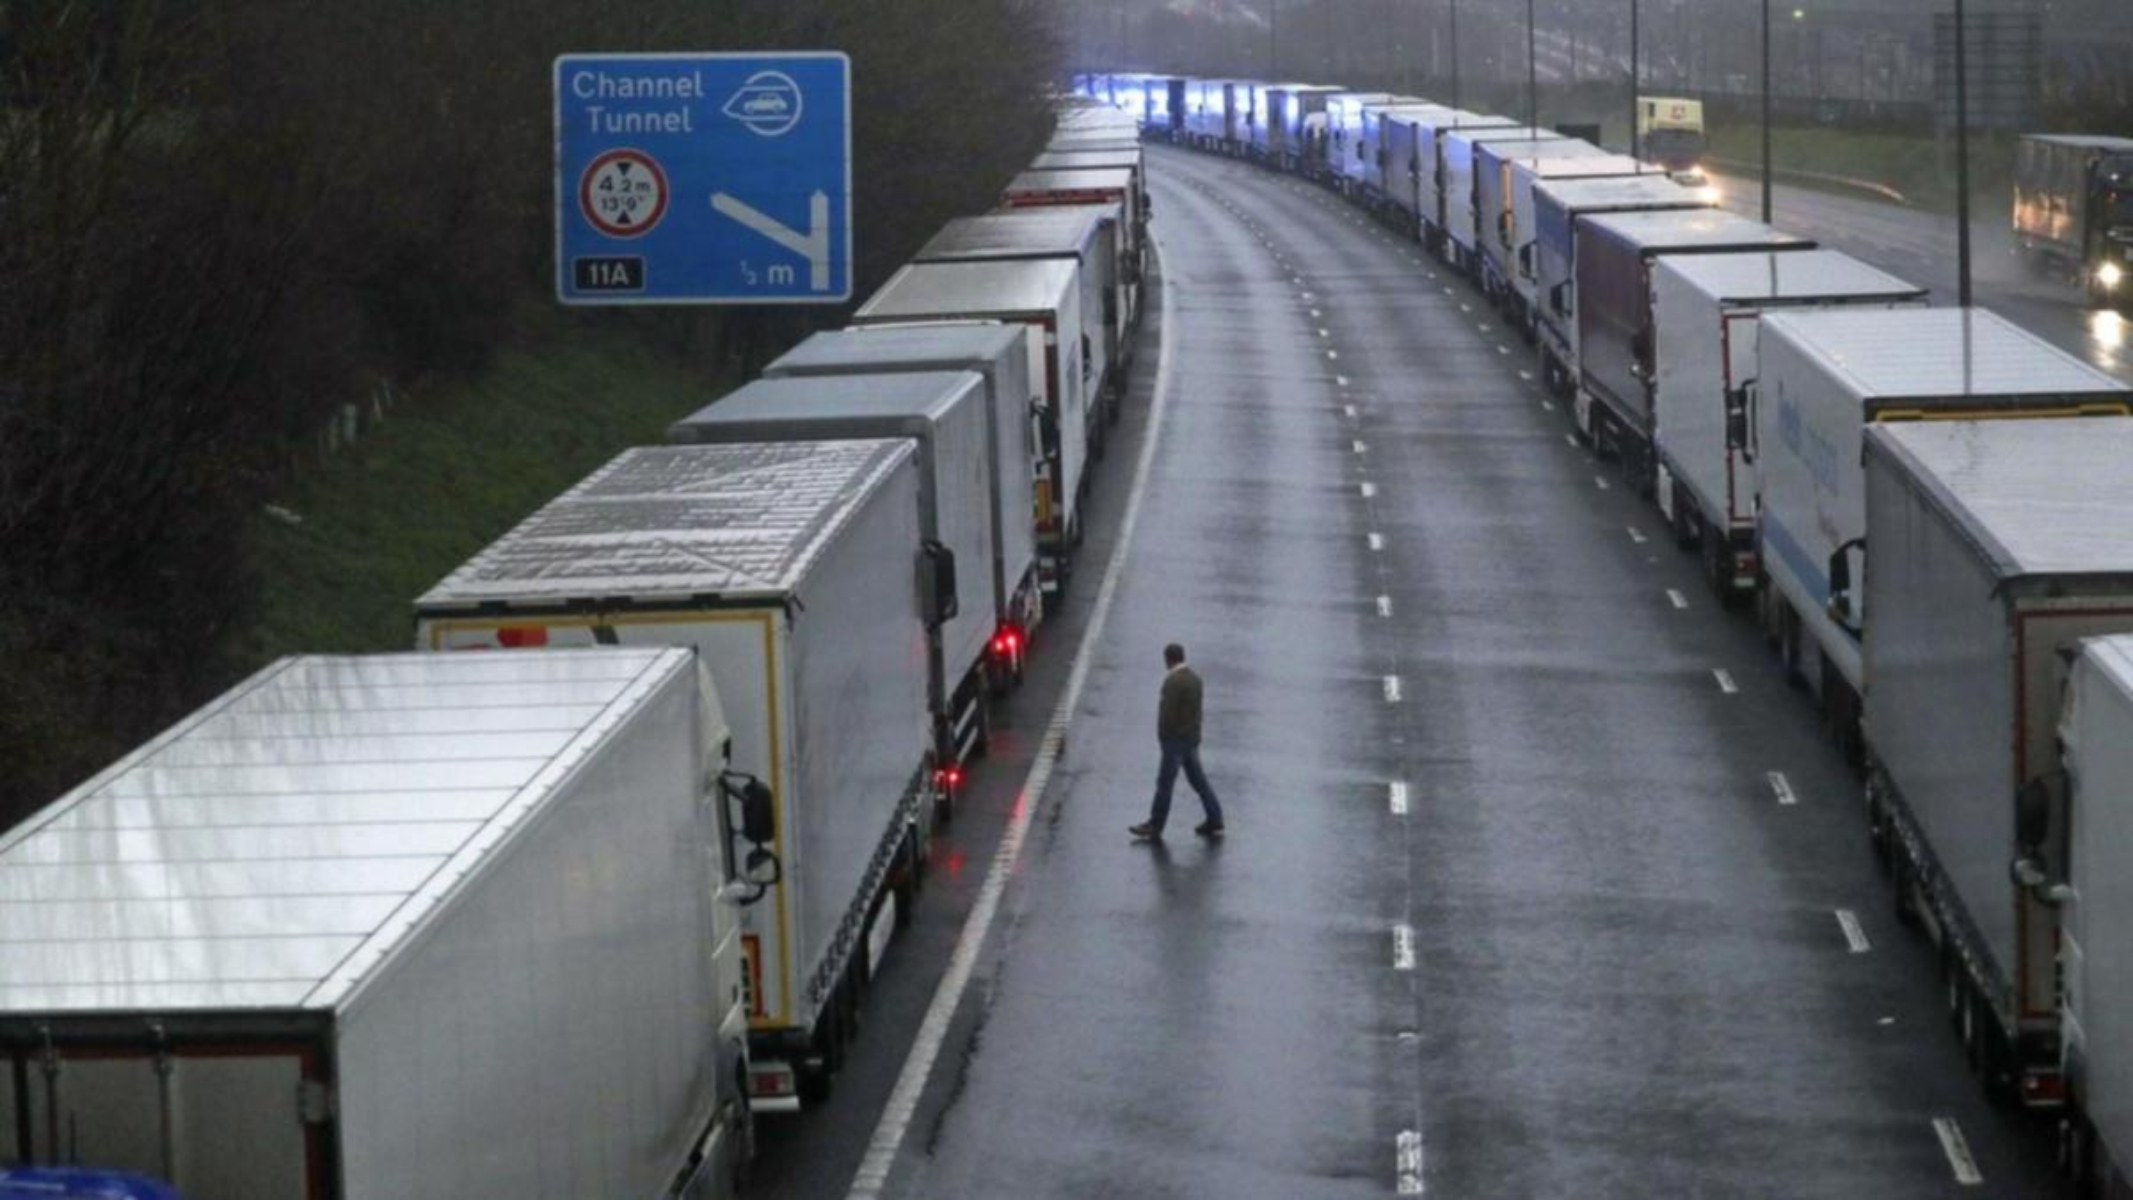 Γαλλία- Βρετανία σύνορα: Ανησυχίες για την μεταφορά τροφίμων [pic,vid]